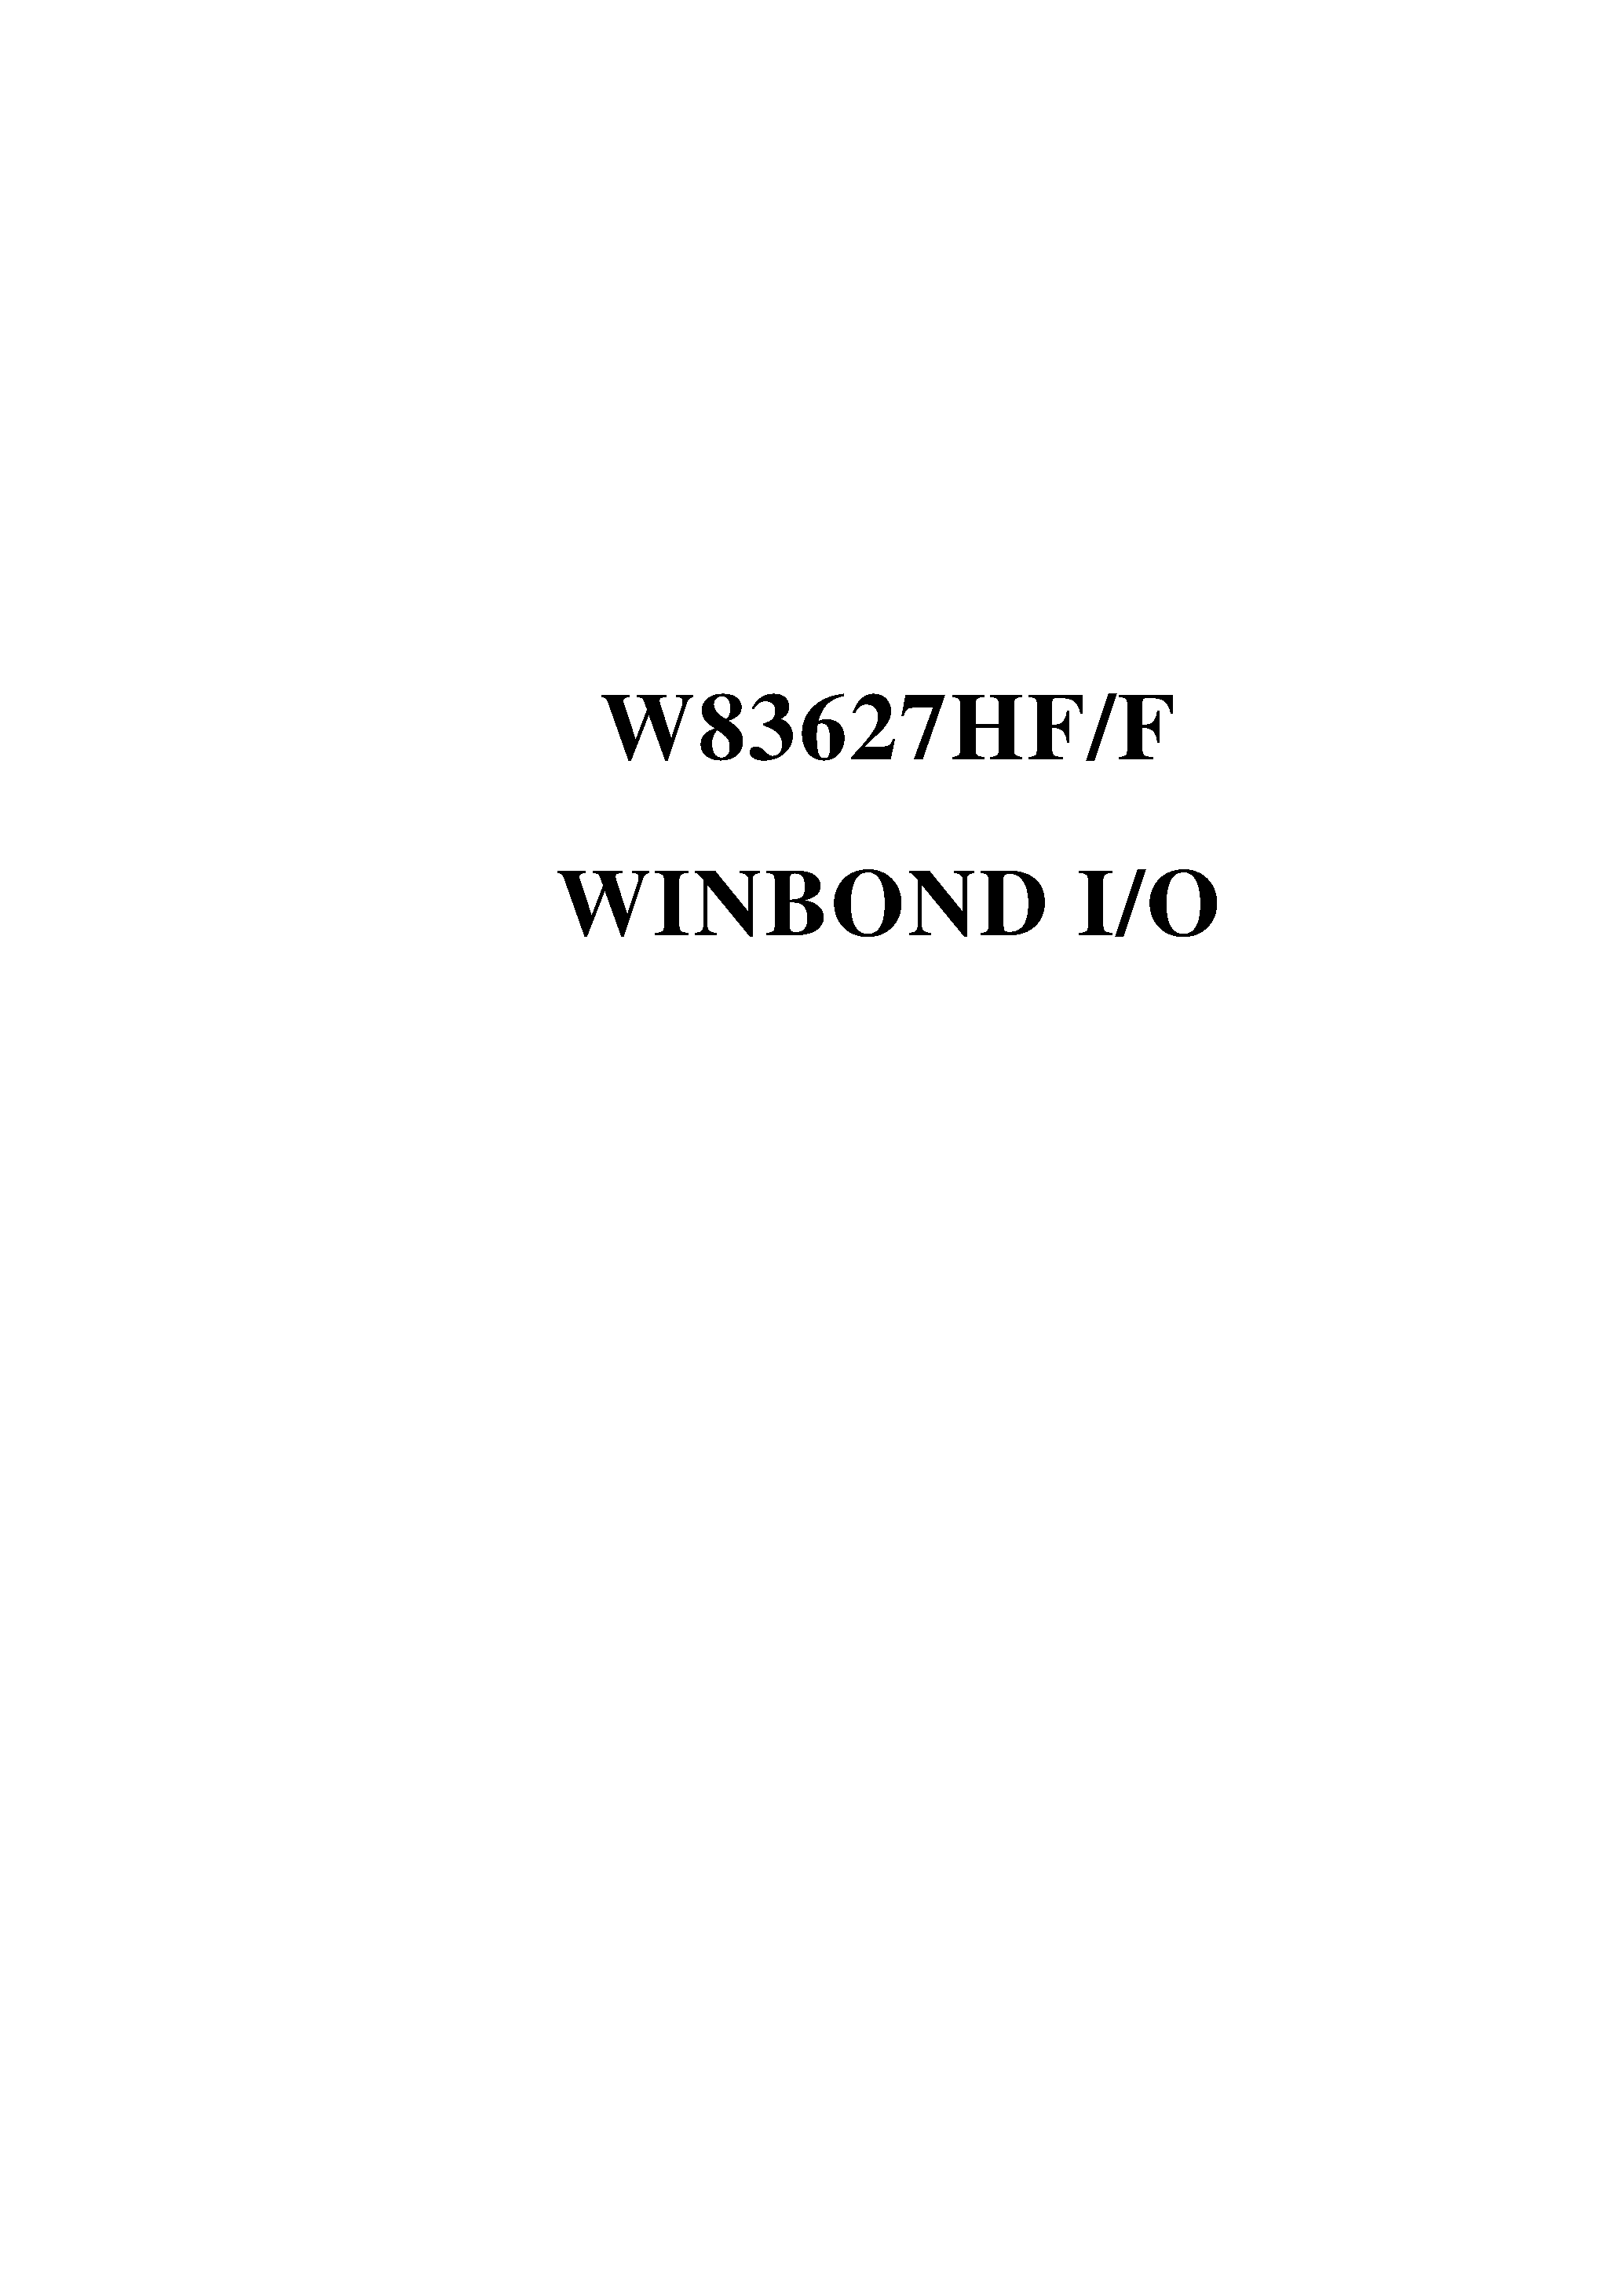 Даташит W83627HF-AW - WINBOND I/O страница 1